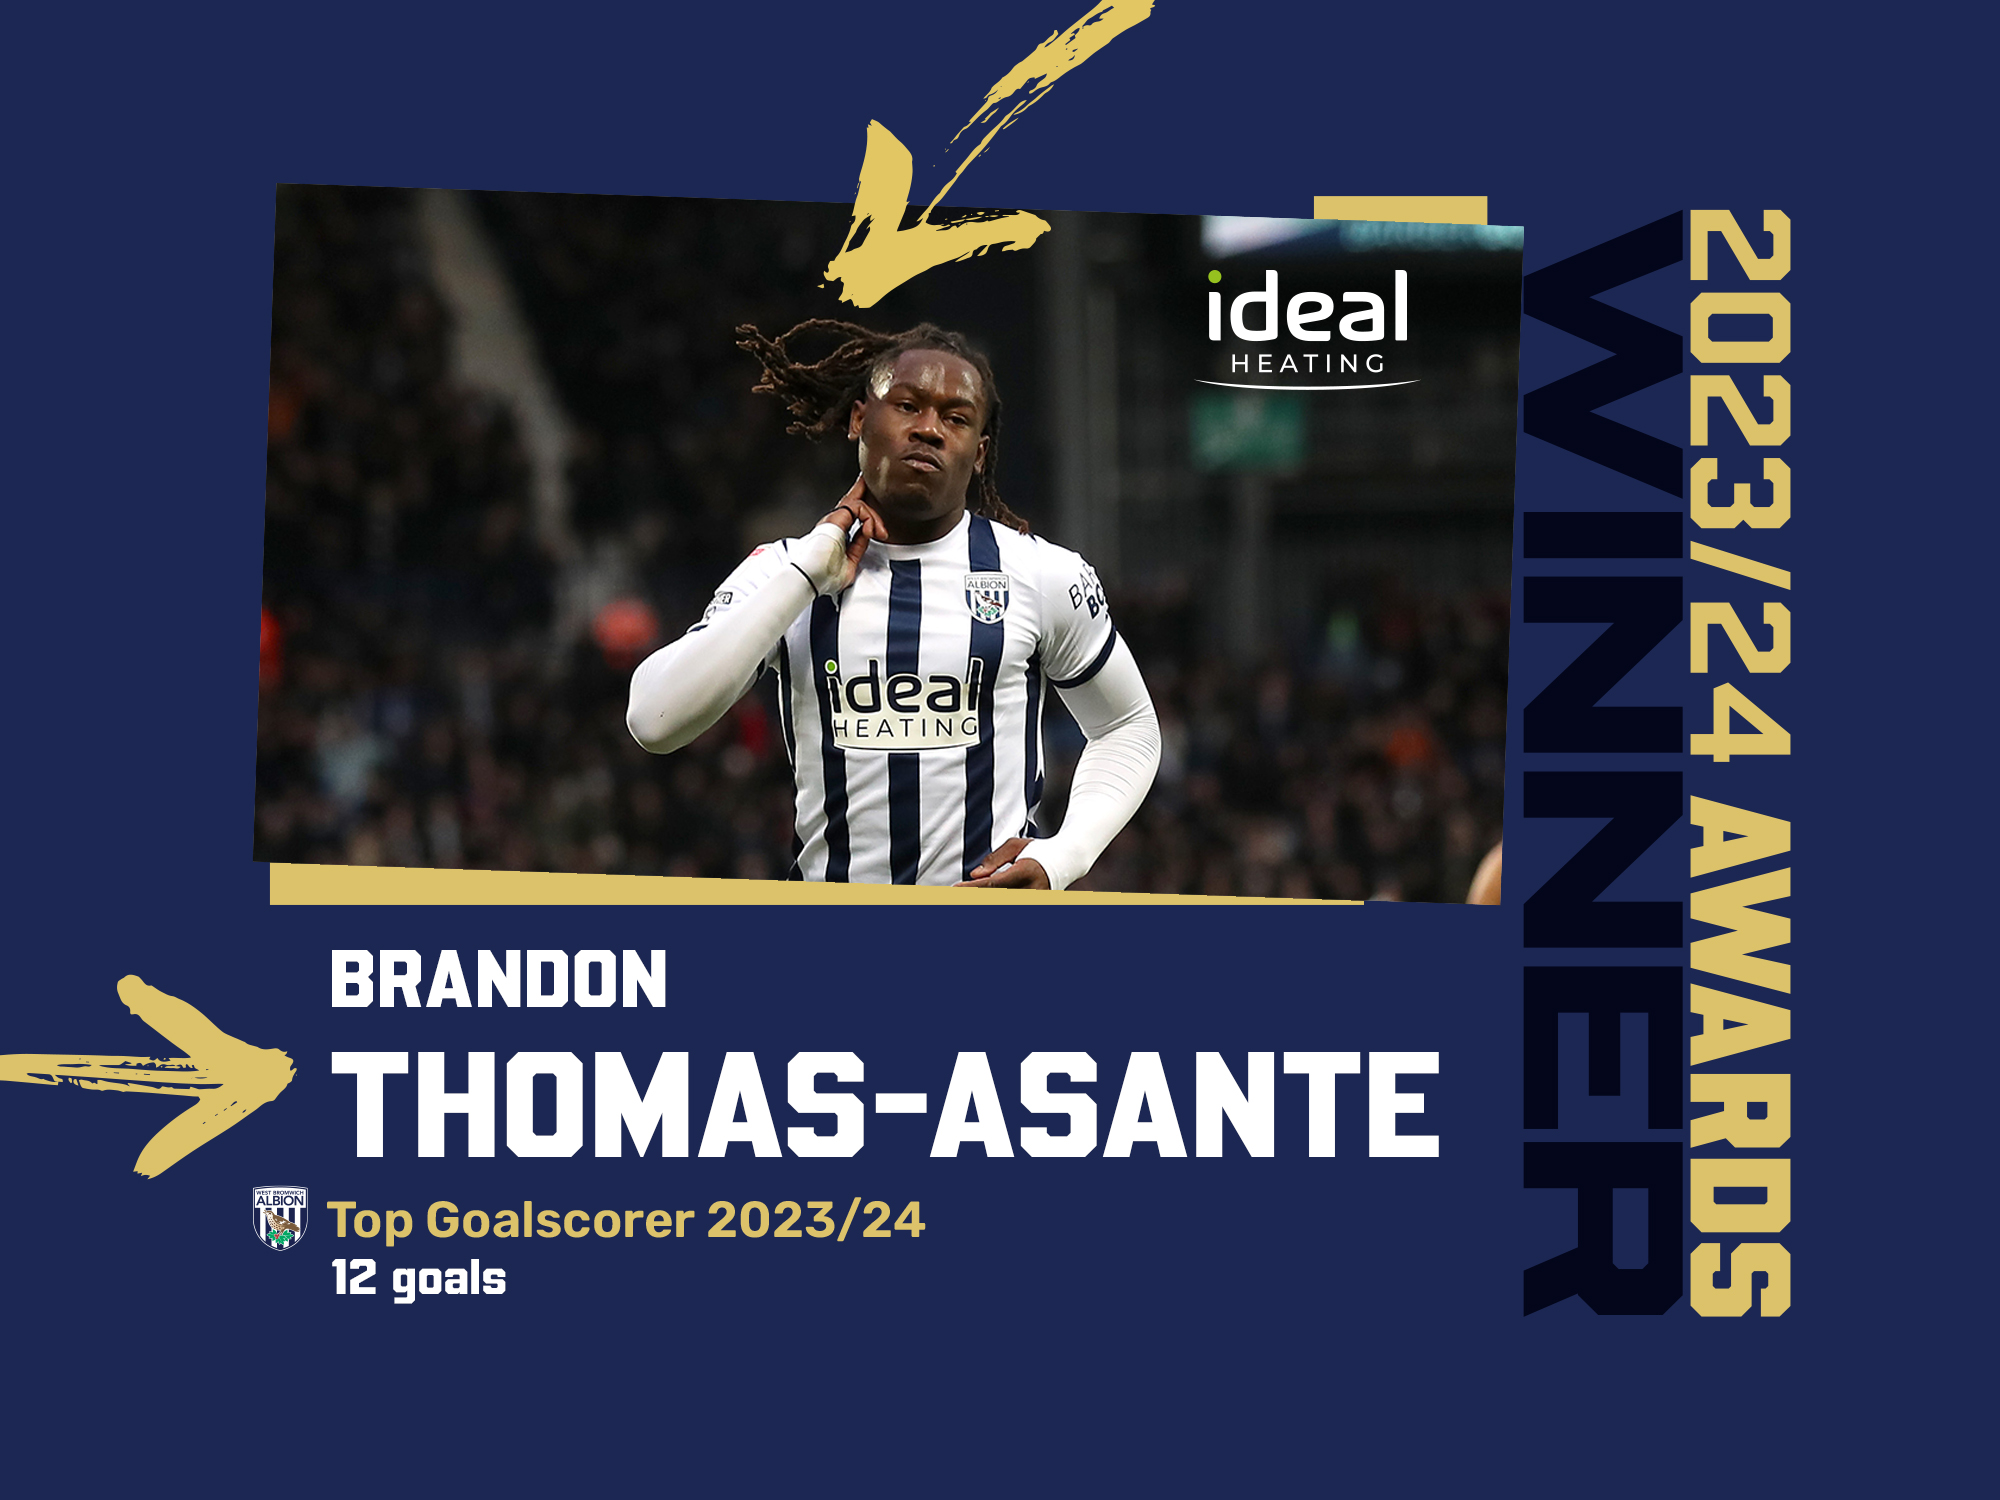 Brandon Thomas-Asante's top goalscorer award graphic 